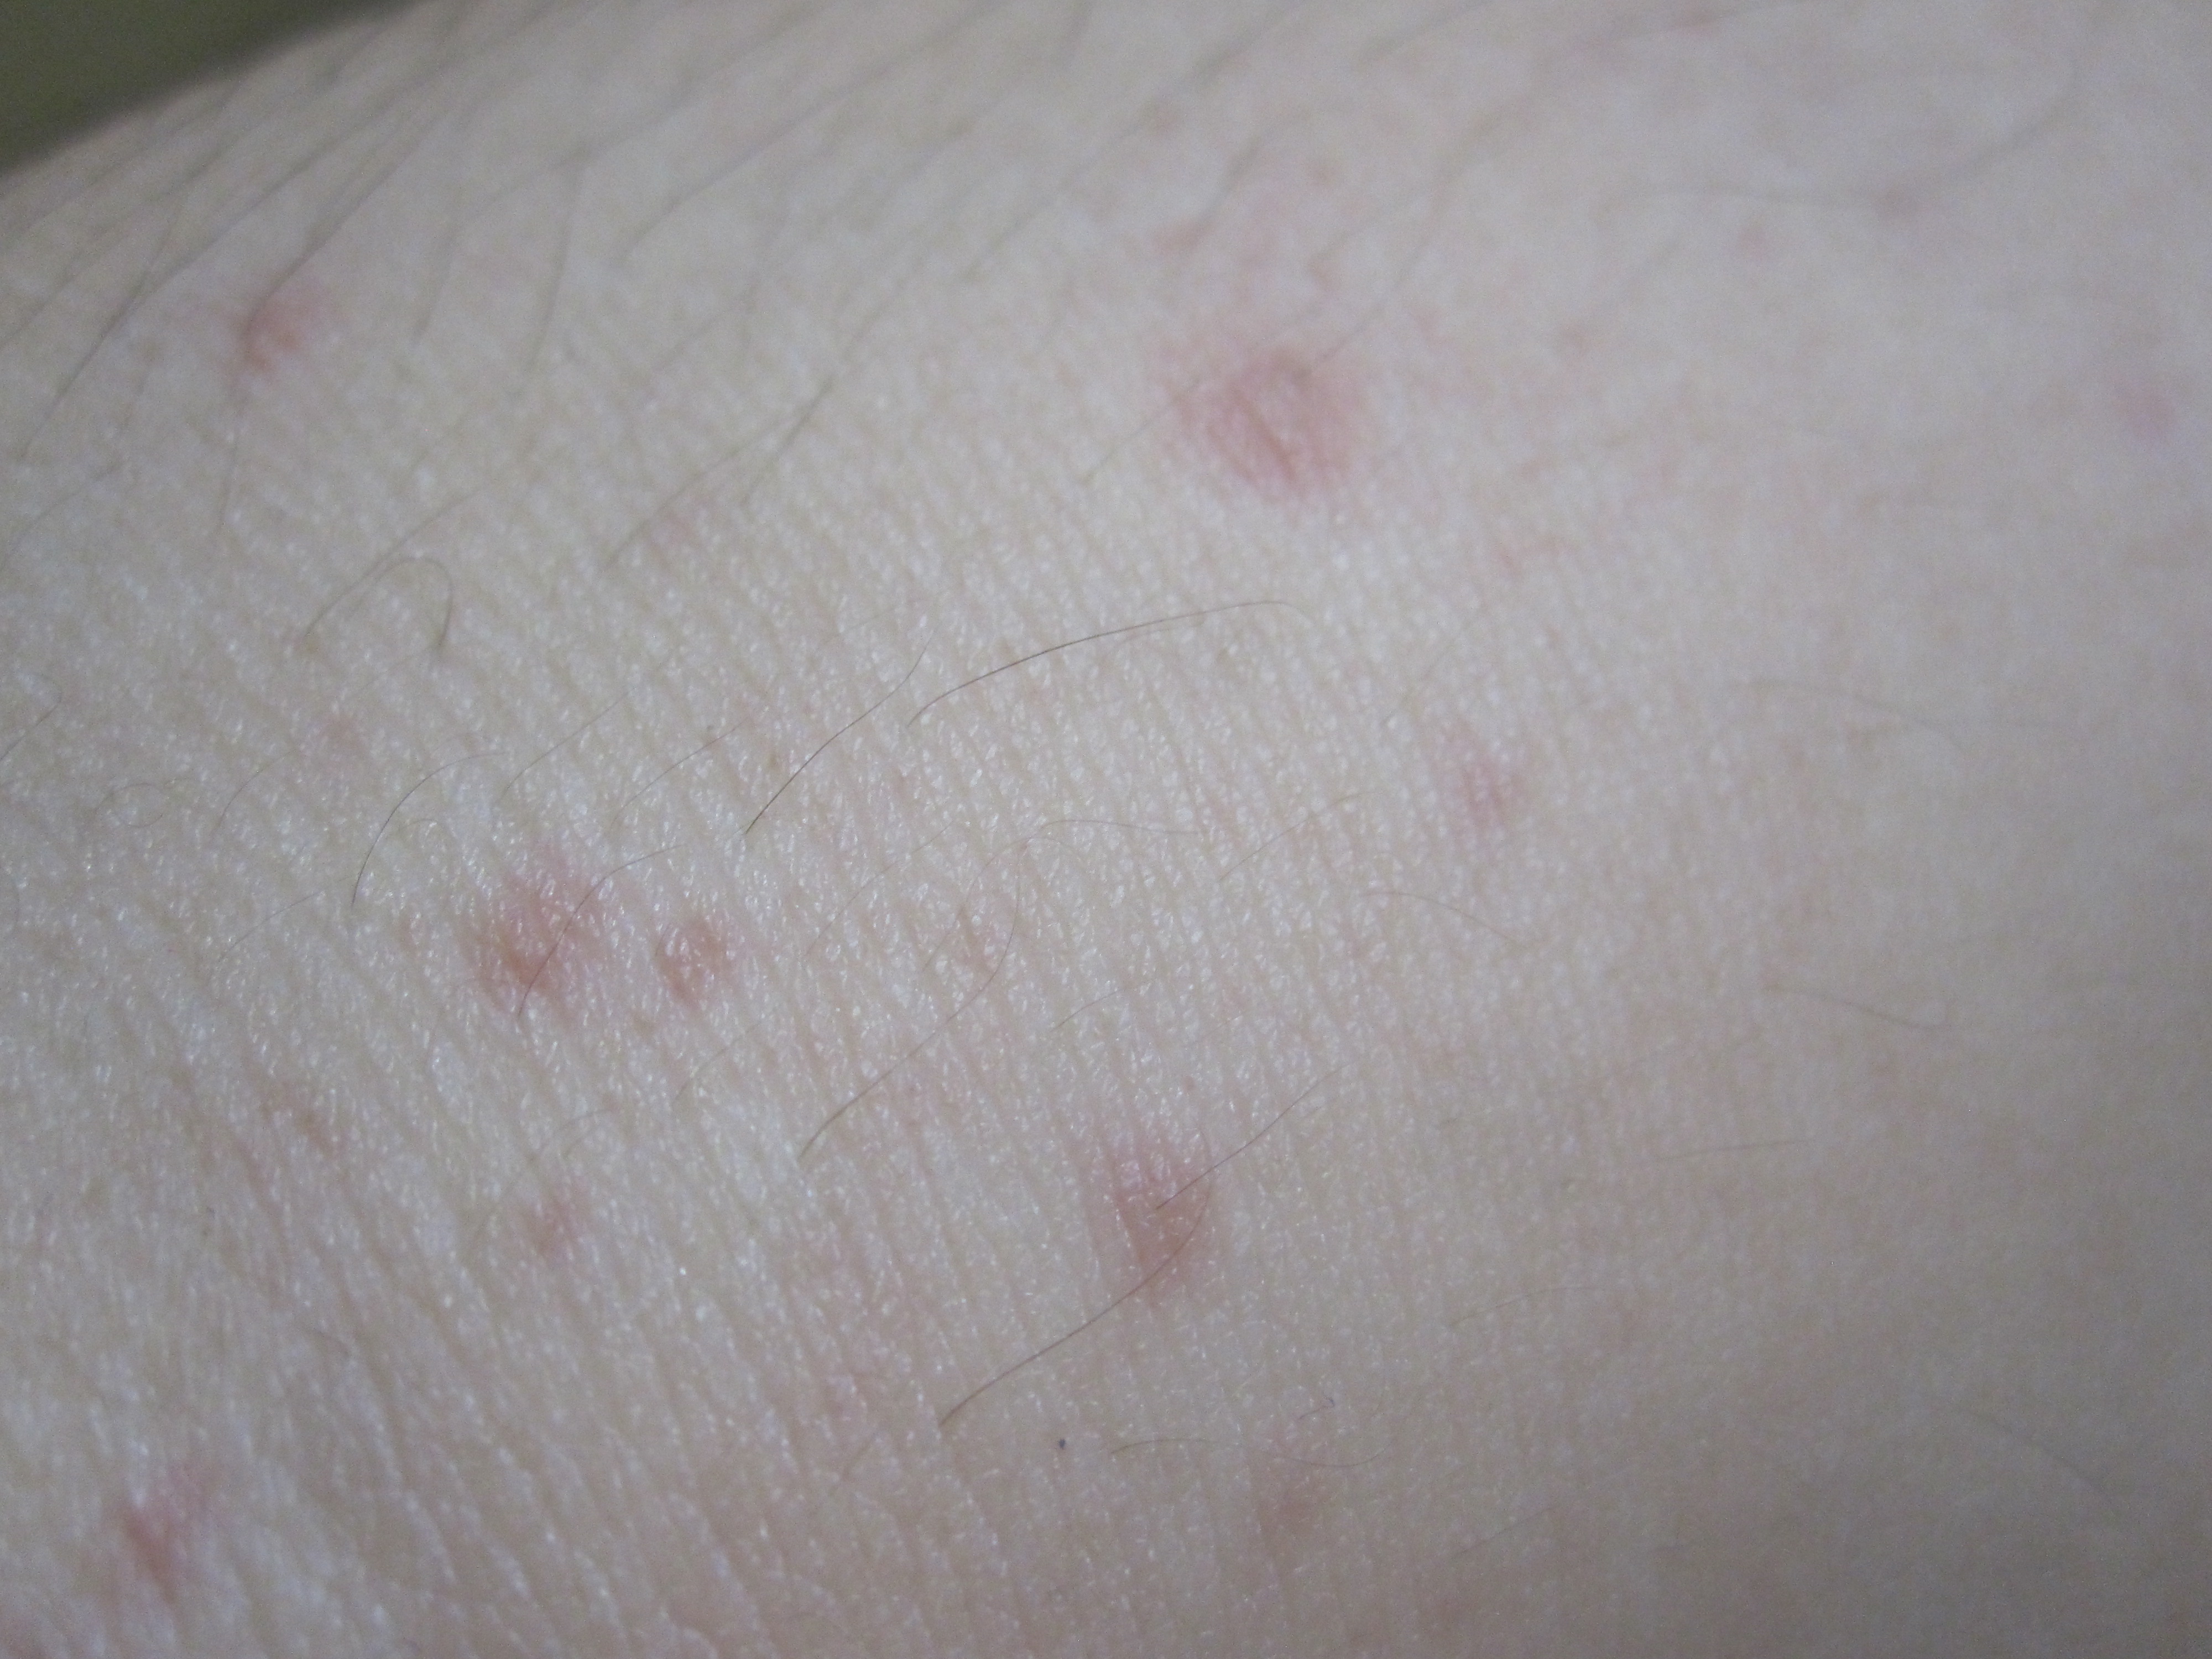 赤い斑点状の蕁麻疹